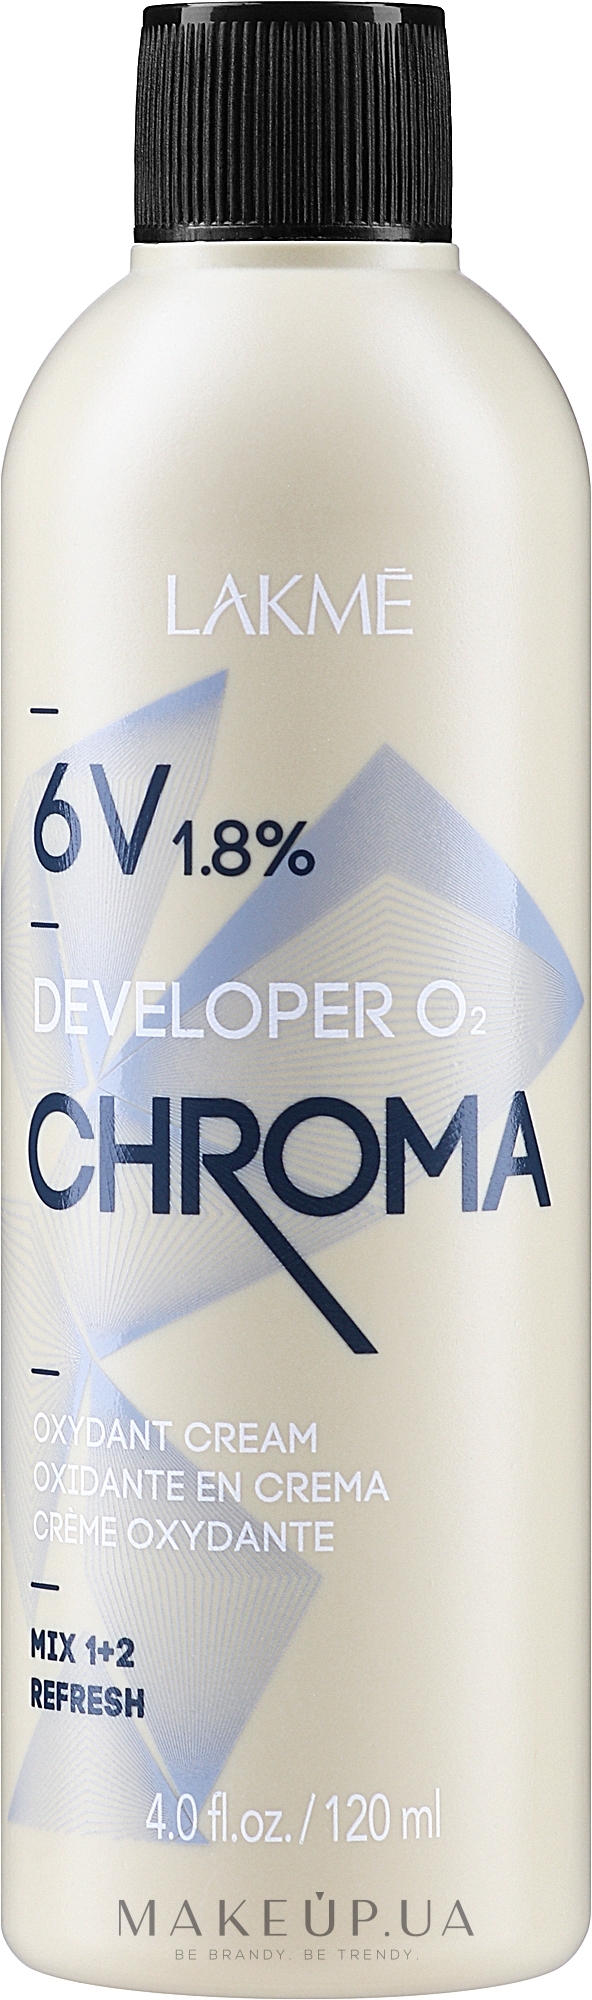 Крем-окислювач - Lakme Chroma Developer 02 6V (1,8%) — фото 120ml